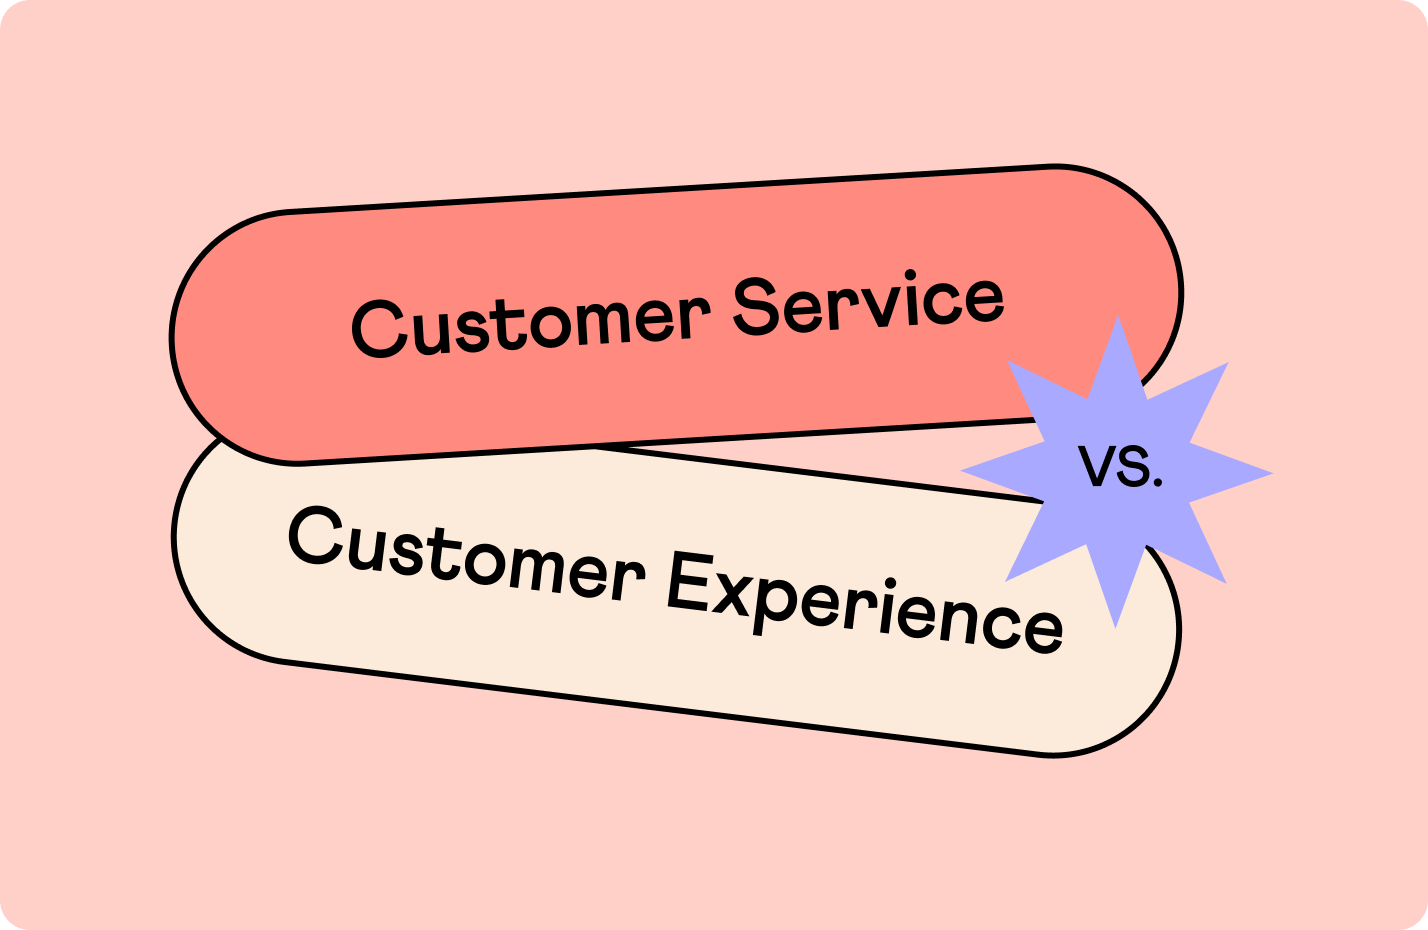 خدمات مشتری در مقابل تجربه مشتری: کدام یک اهمیت بیشتری دارد؟